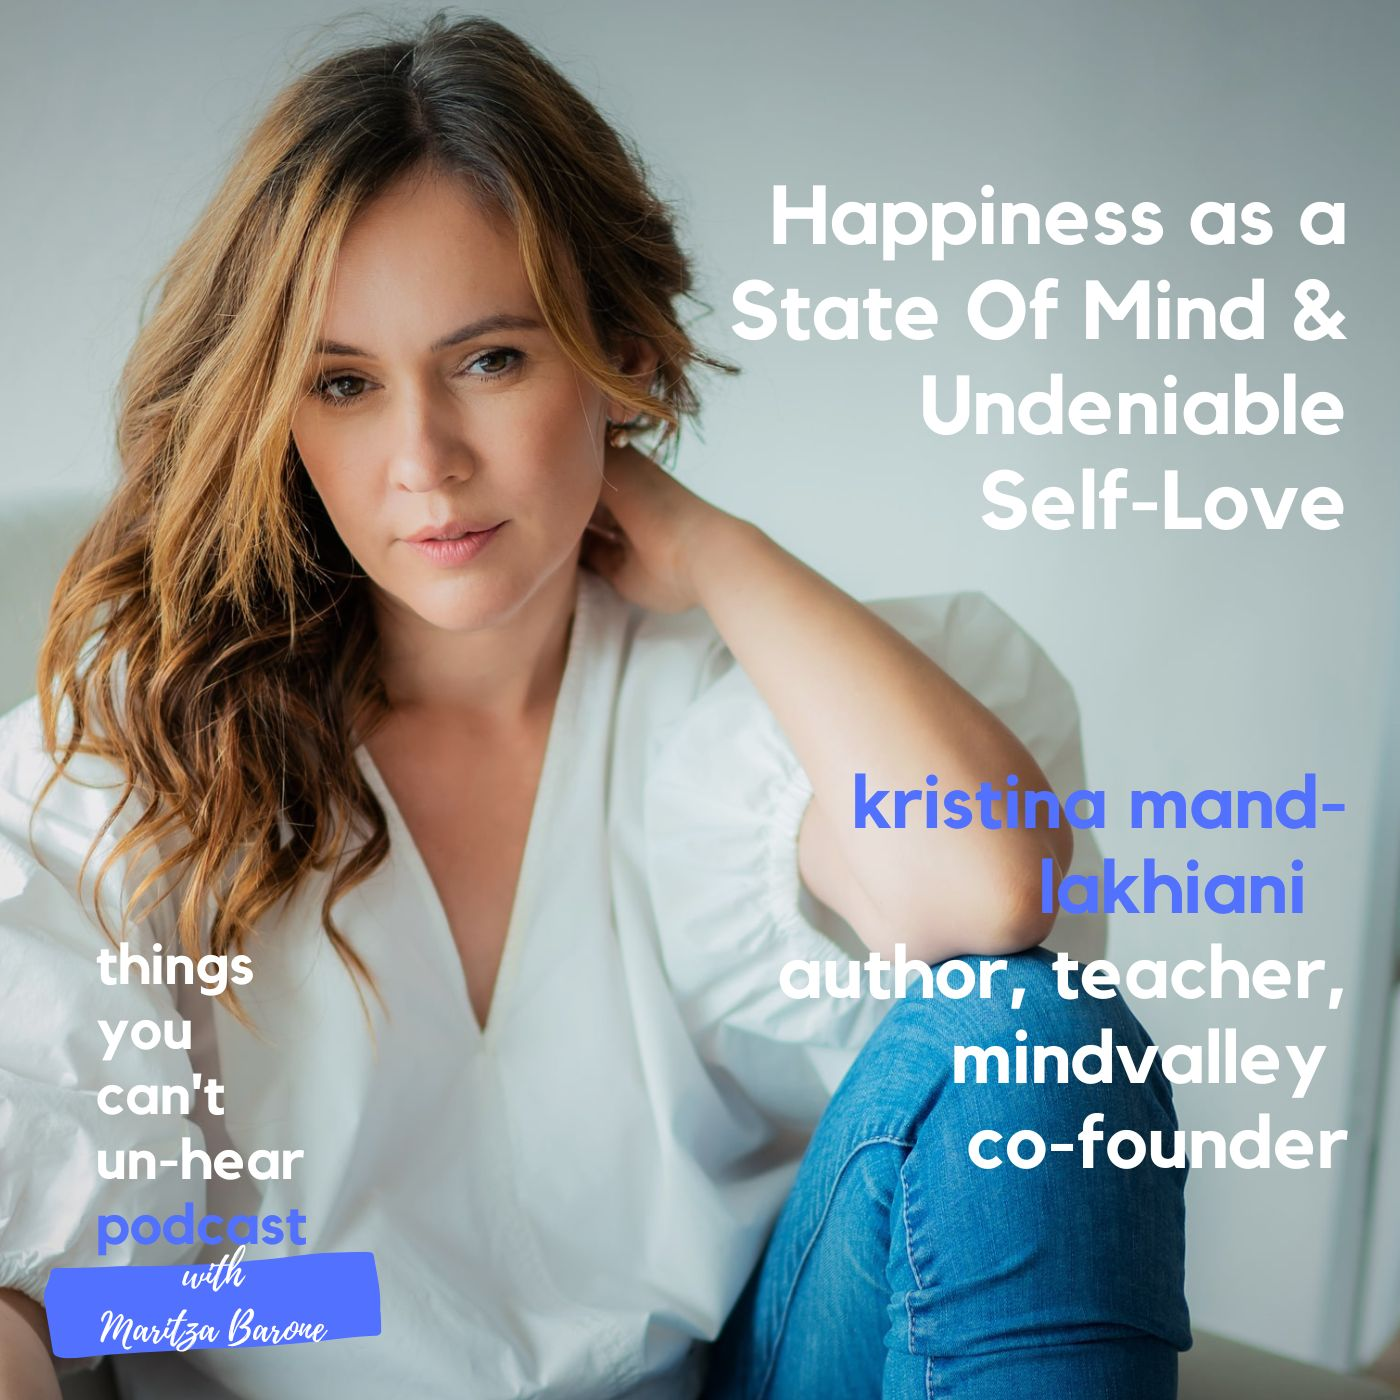 Kristina Mänd-Lakhiani // Happiness as a State of Mind